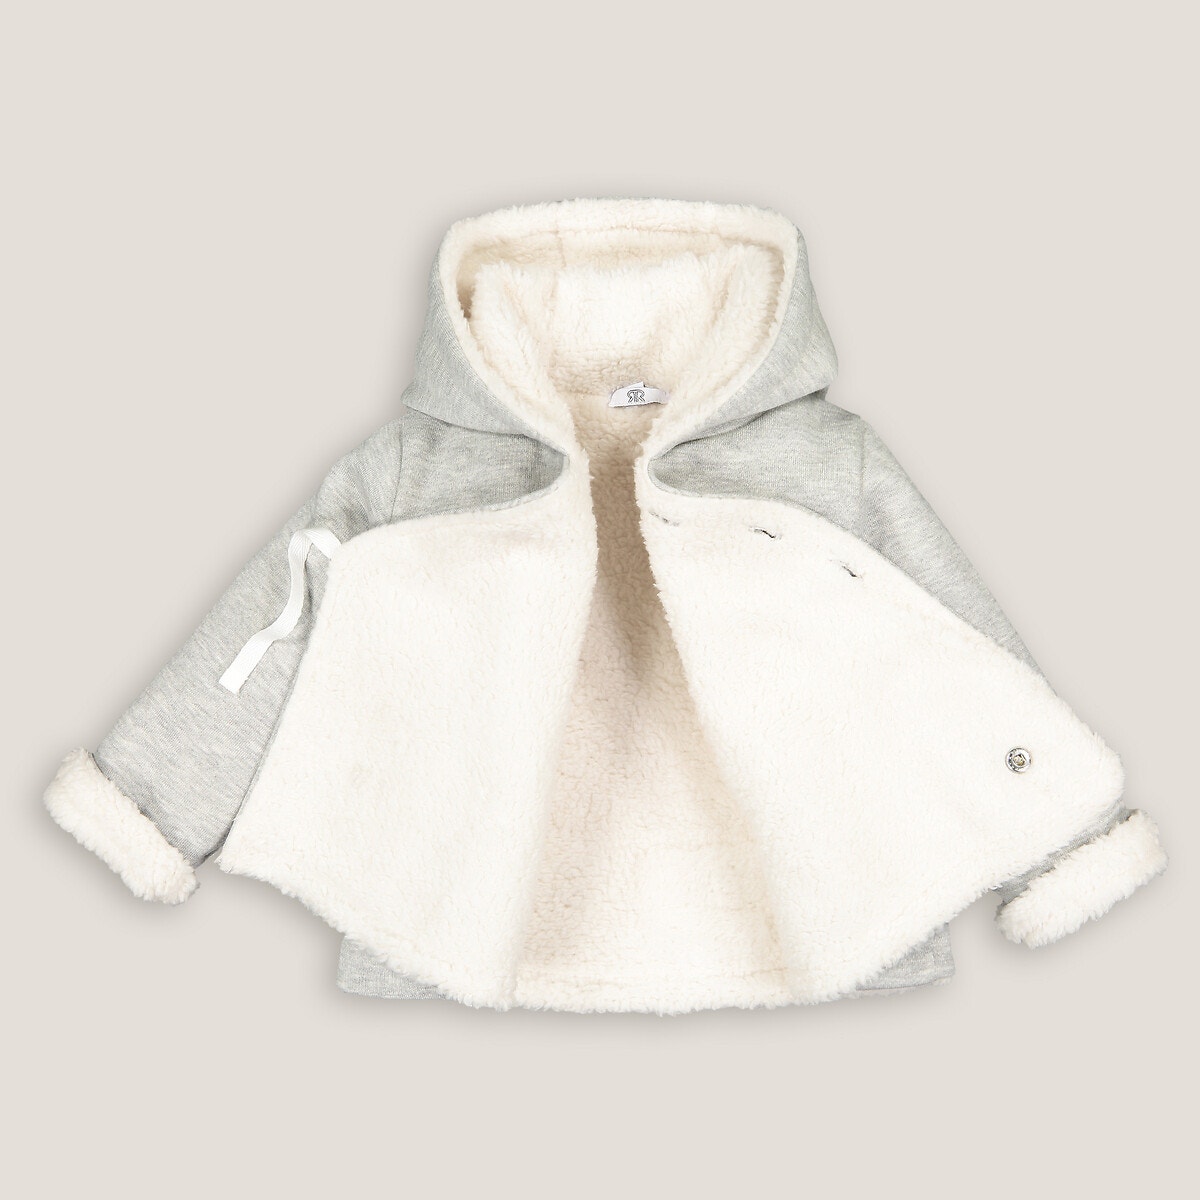 Παλτό με κουκούλα και επένδυση φλις, 0 - 3 ετών